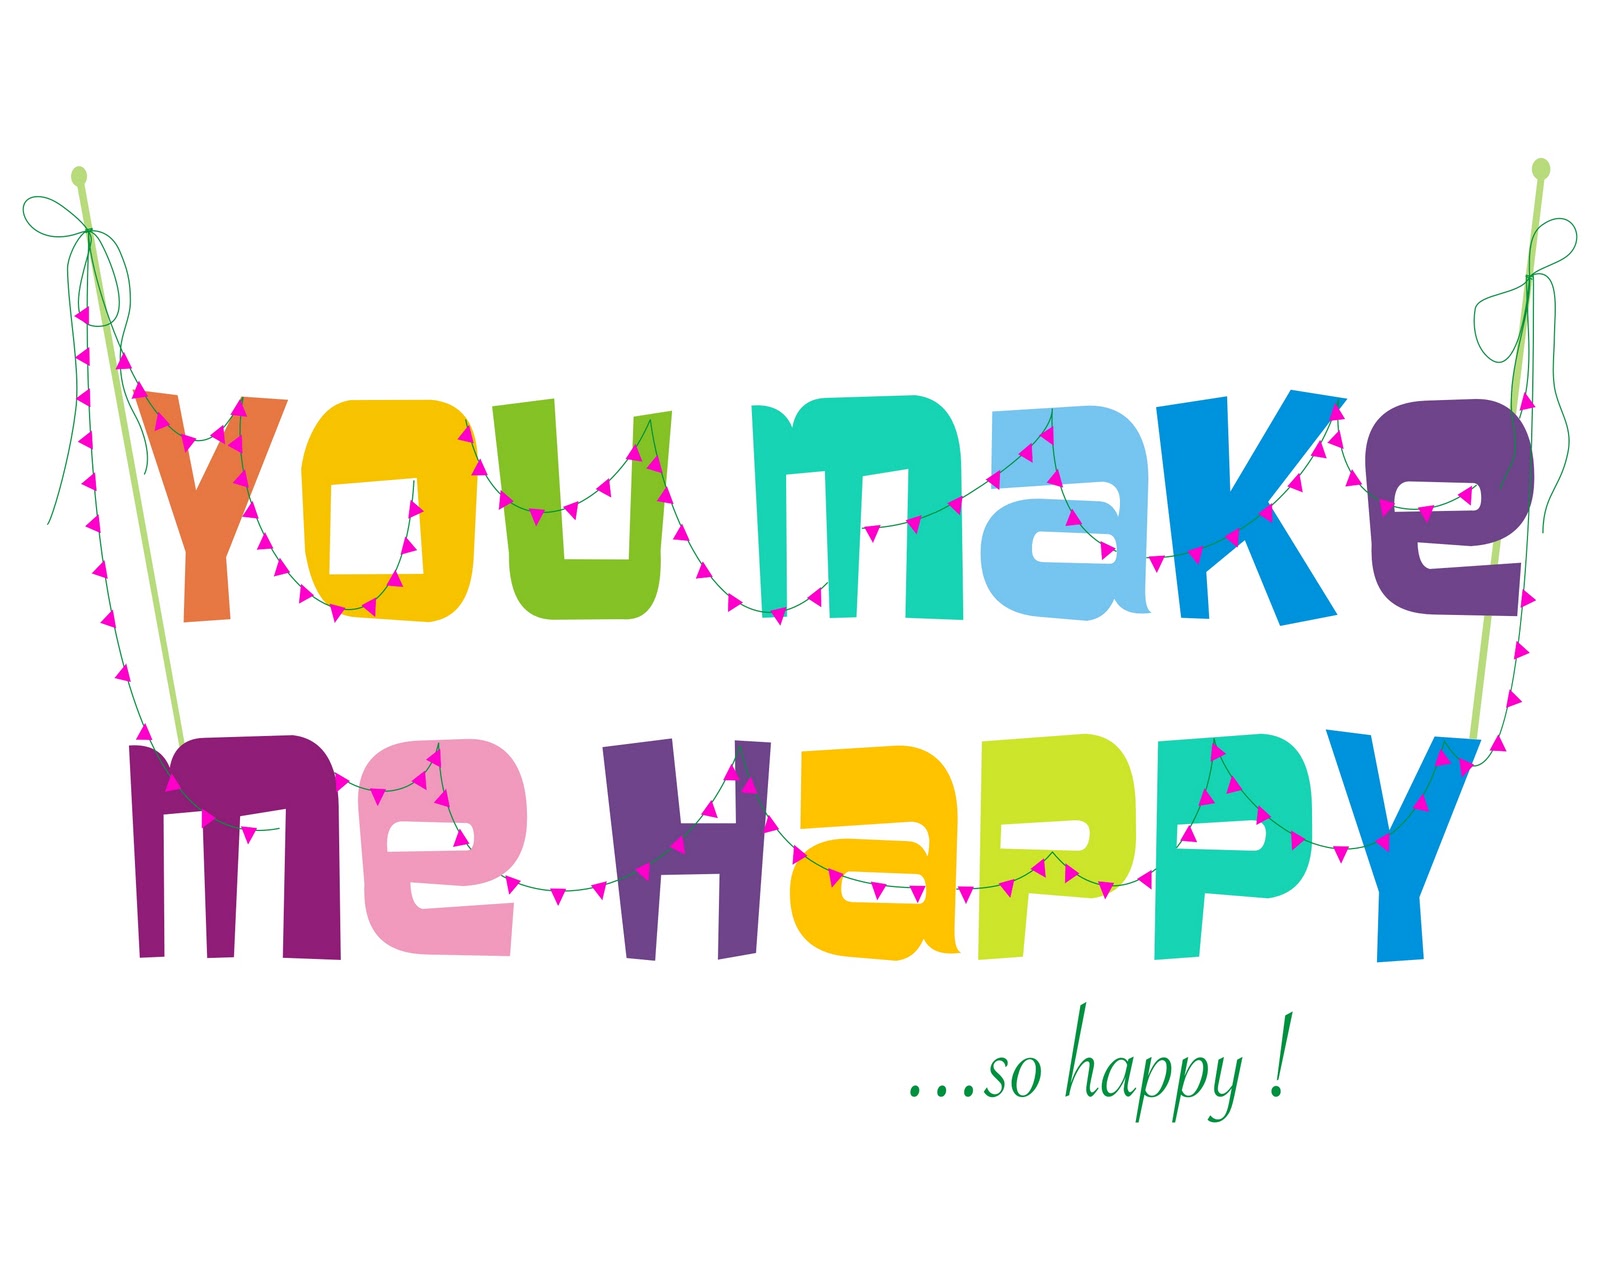 Im be happy. You make me Happy. Картину в i am Happy. I am Happy картинки. You make me Happy картинки.